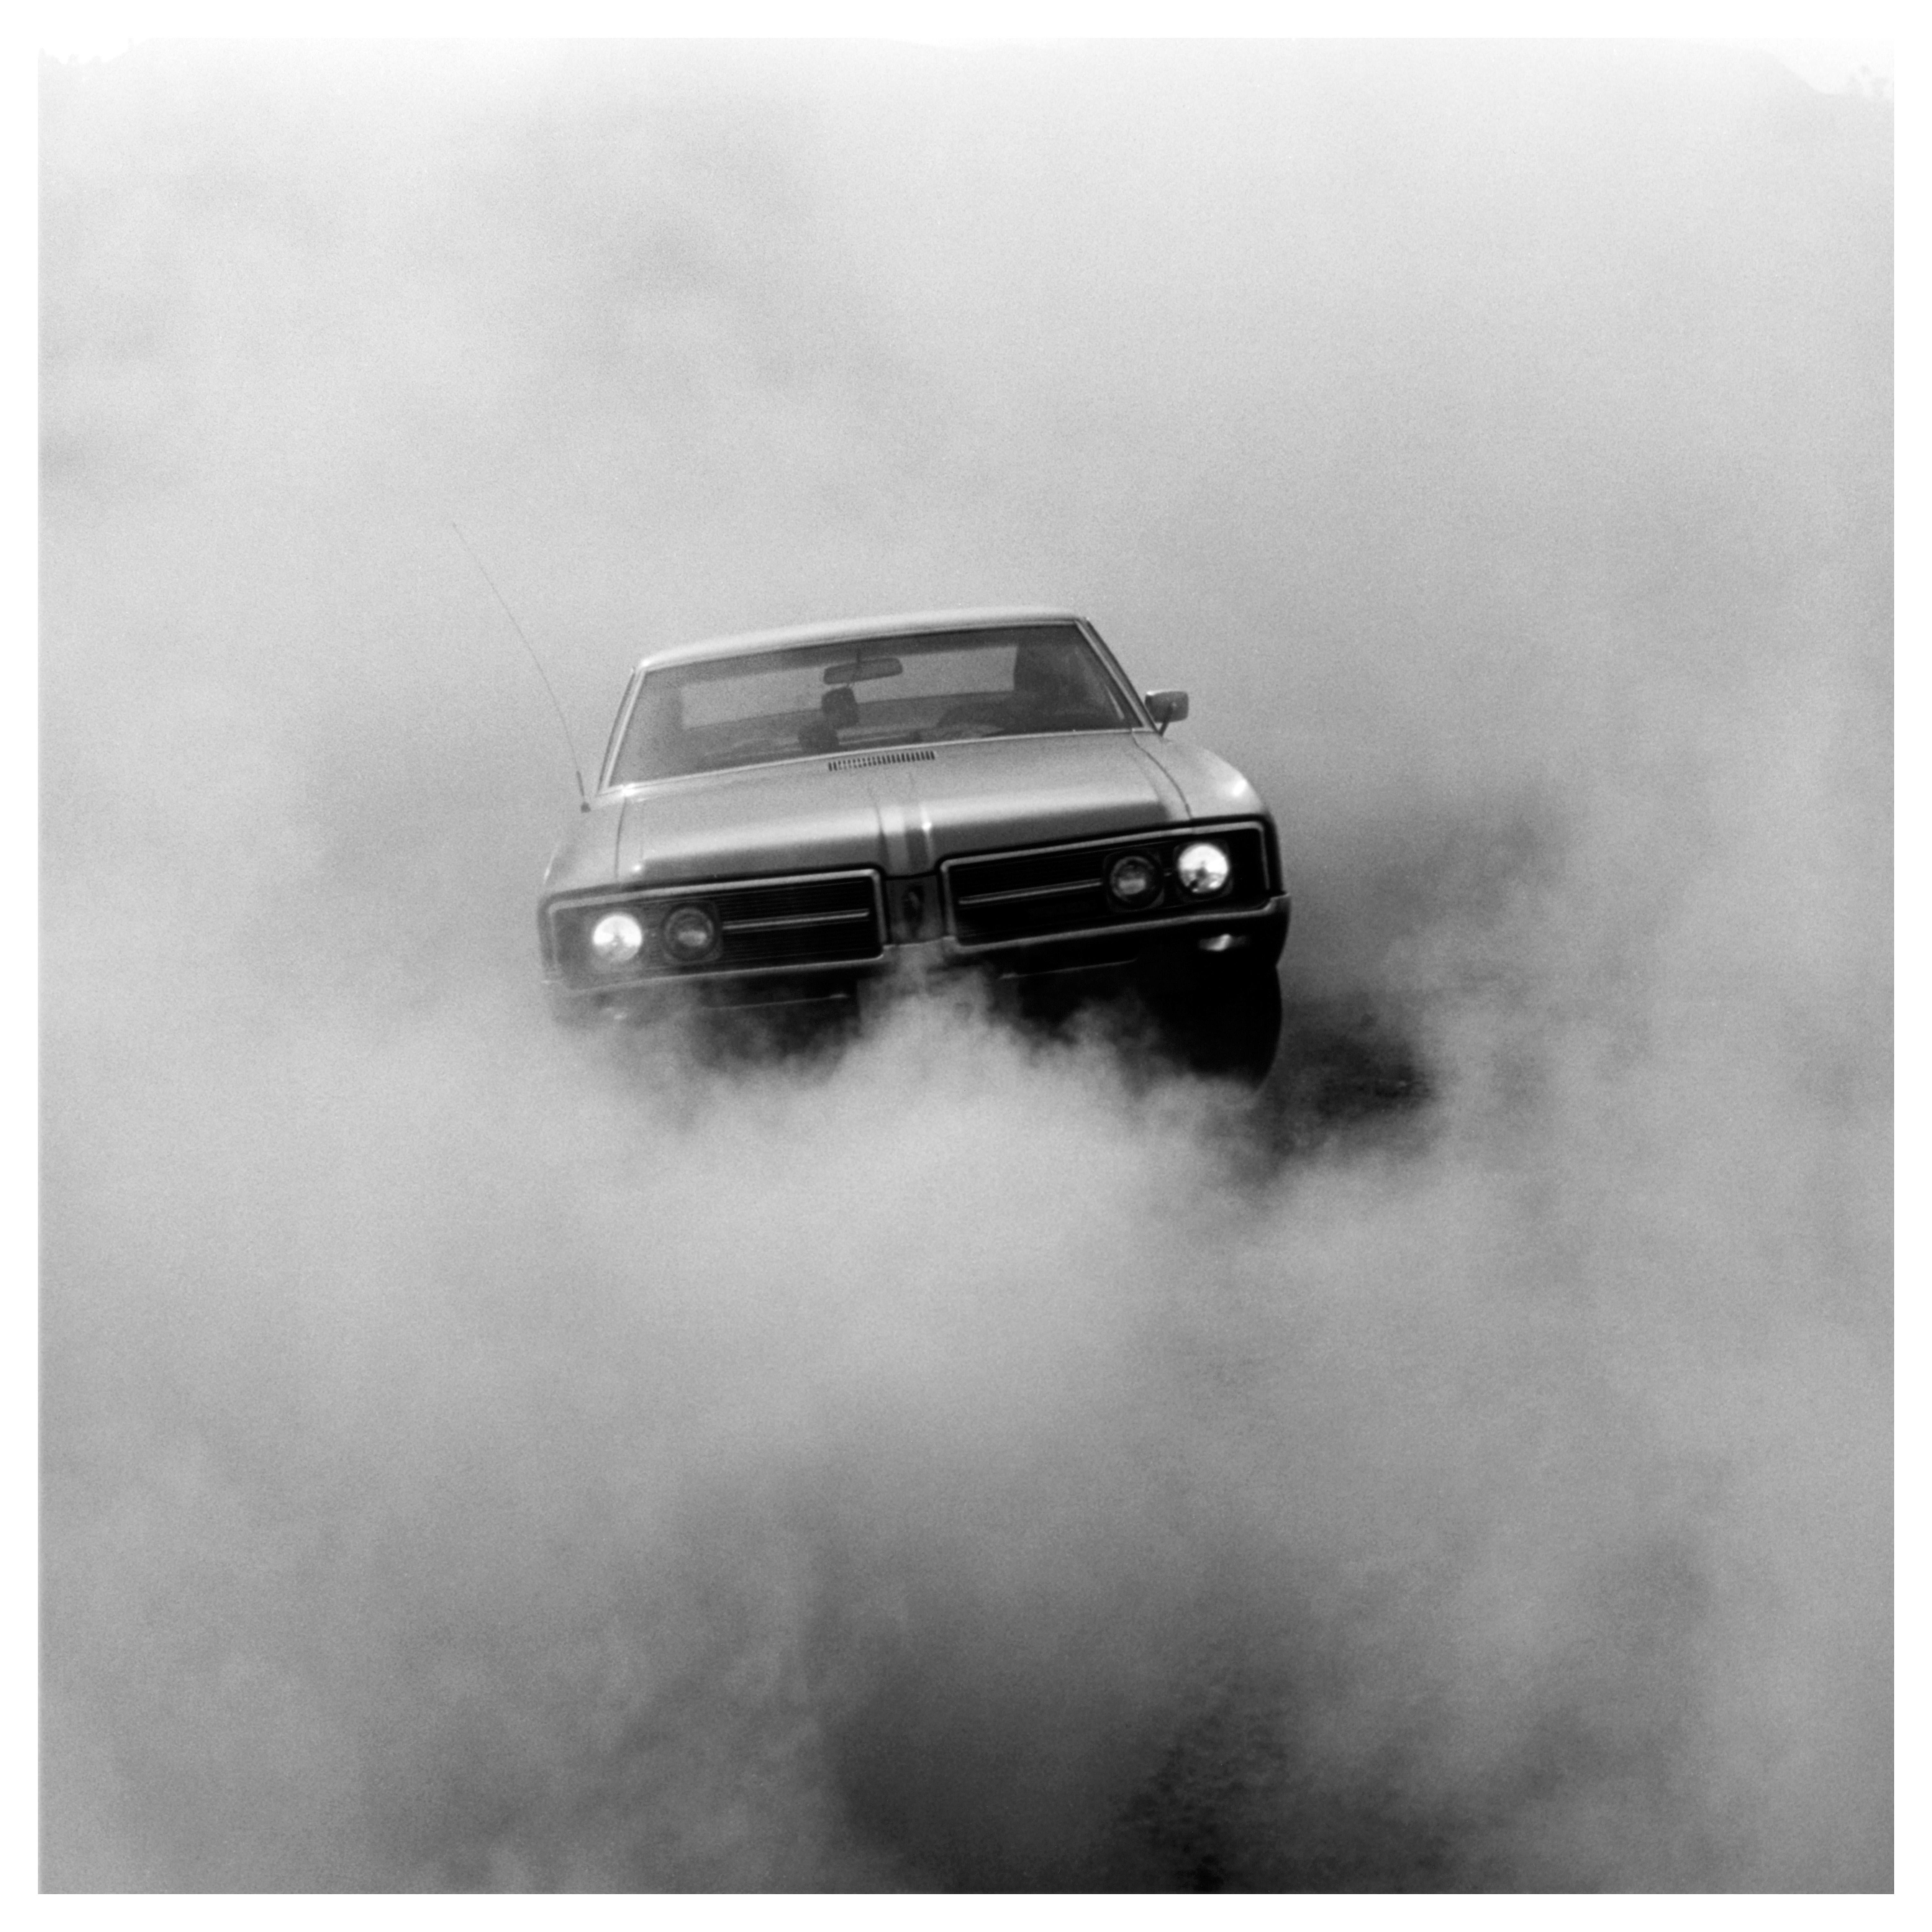 Buick in the Dust, Hemsby - Fotografía de coches cuadrados en blanco y negro